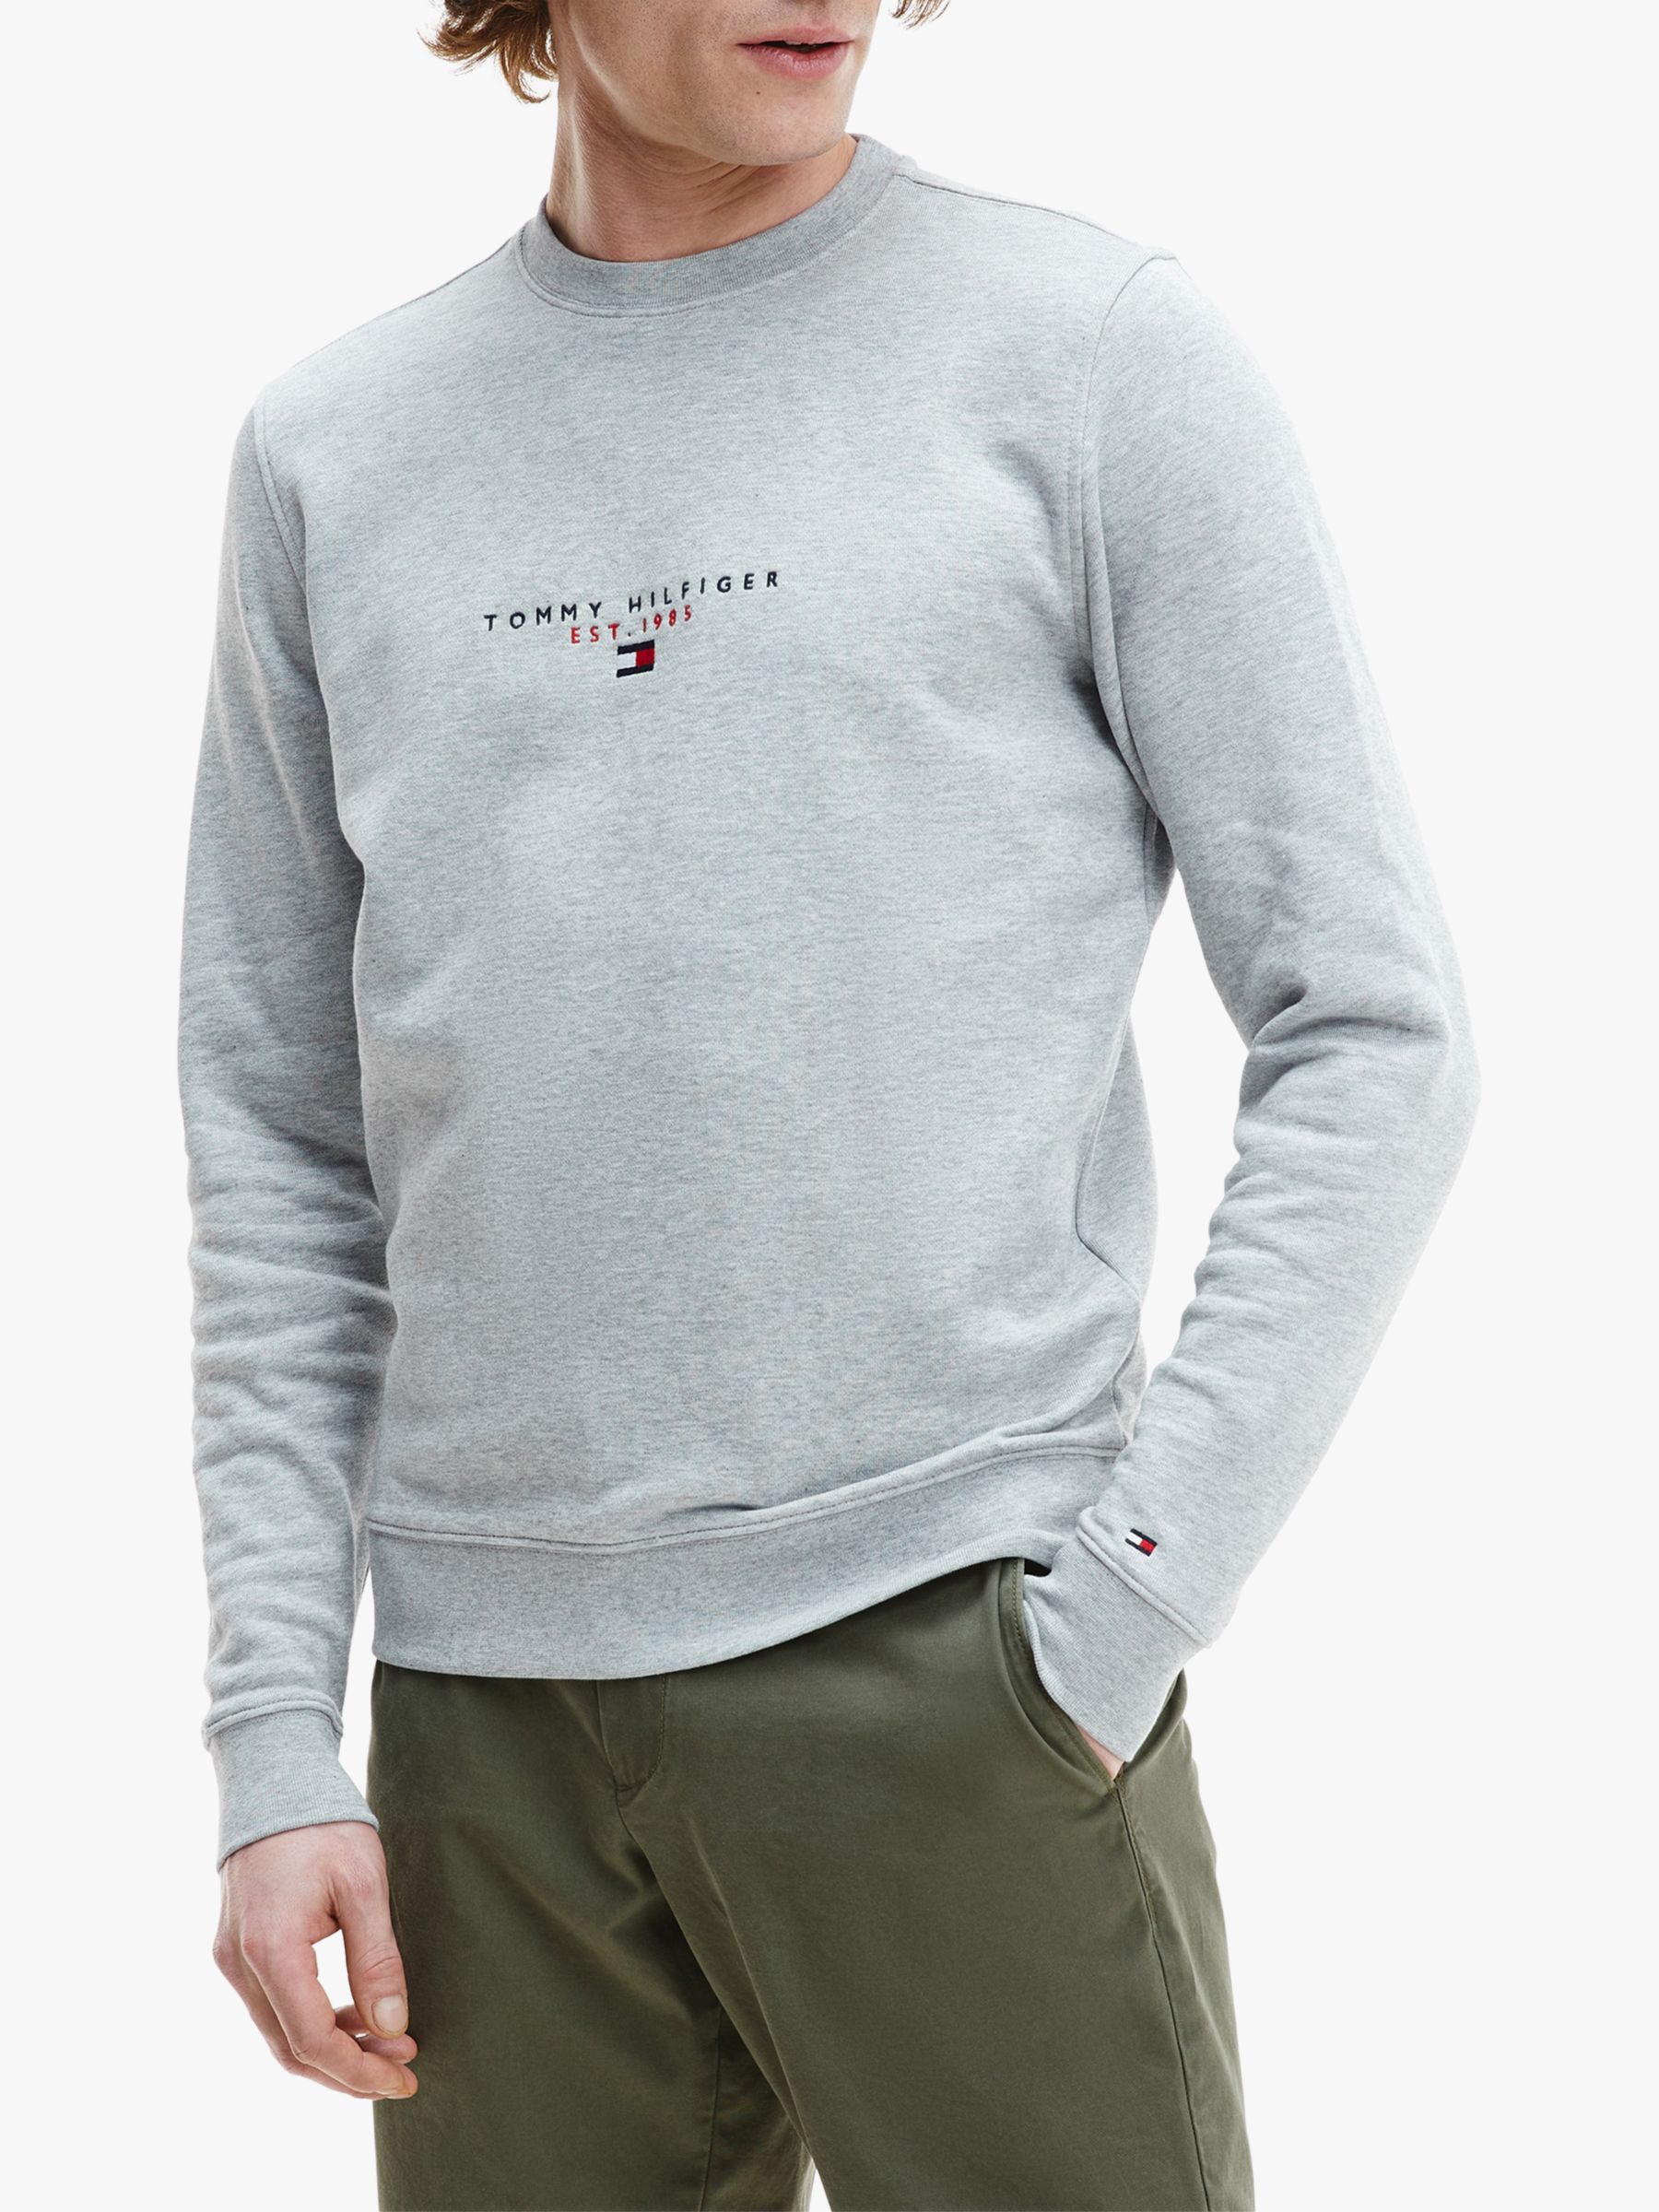 Tommy Hilfiger Essential Crew Neck Sweatshirt, Medium Grey Heather